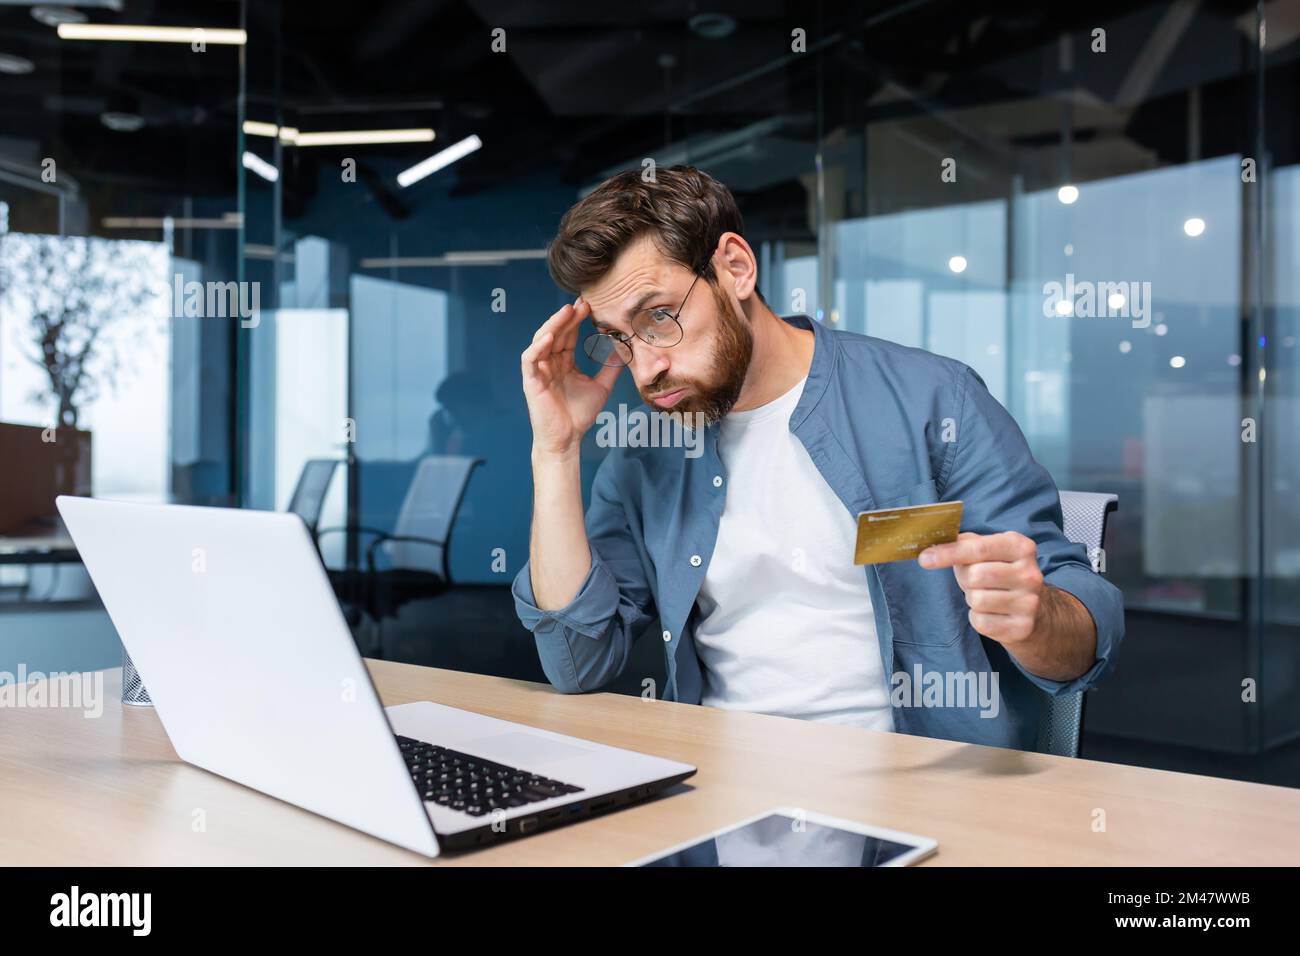 Betrogener und enttäuschter Geschäftsmann, der im Büro arbeitet, Mann mit Bankkreditkarte, der versucht, einen Kauf im Online-Shop zu tätigen, Online-Betrug und -Täuschung. Stockfoto